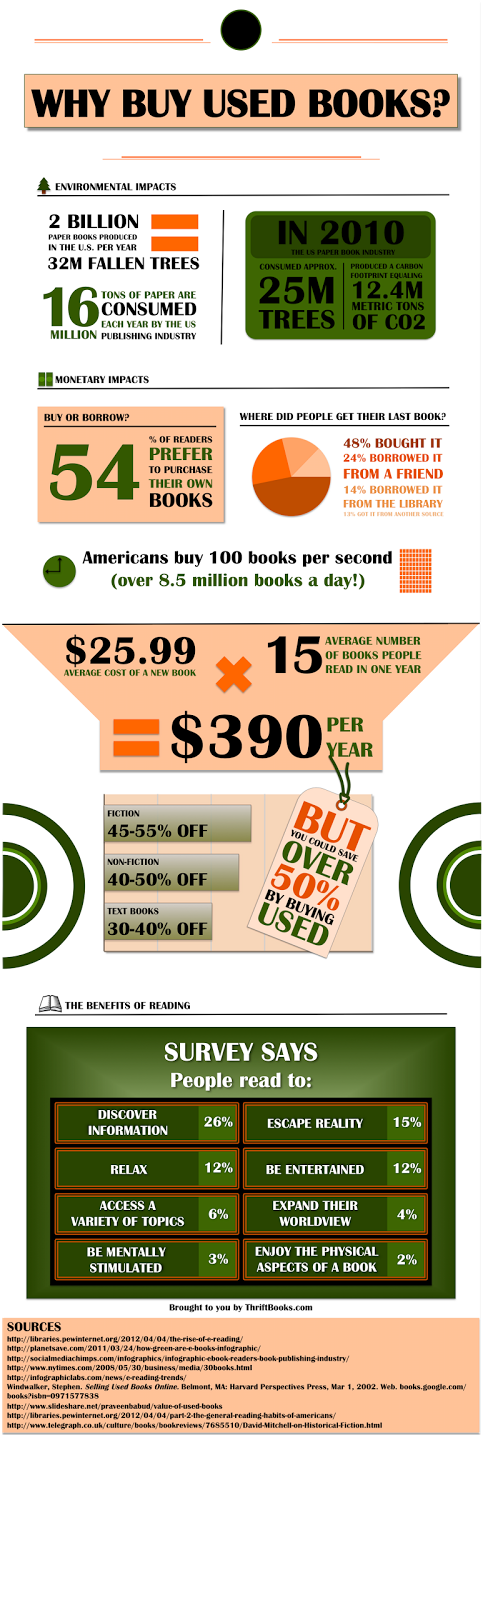 ¿Por qué comprar libros usados?